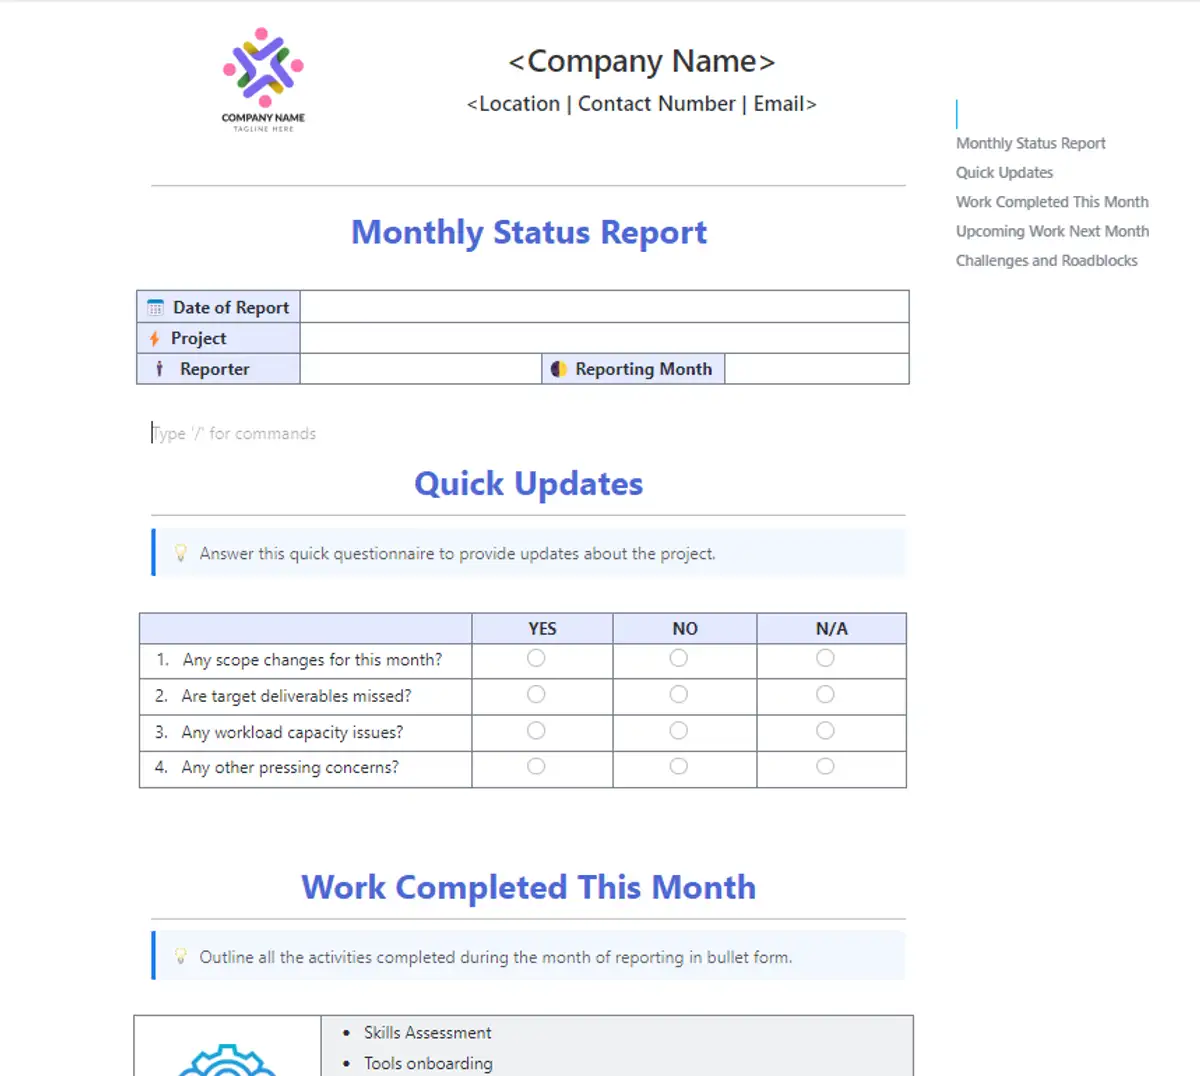 Acompanhe o progresso dos projetos de sua empresa com o modelo de relatório mensal de status de negócios do ClickUp